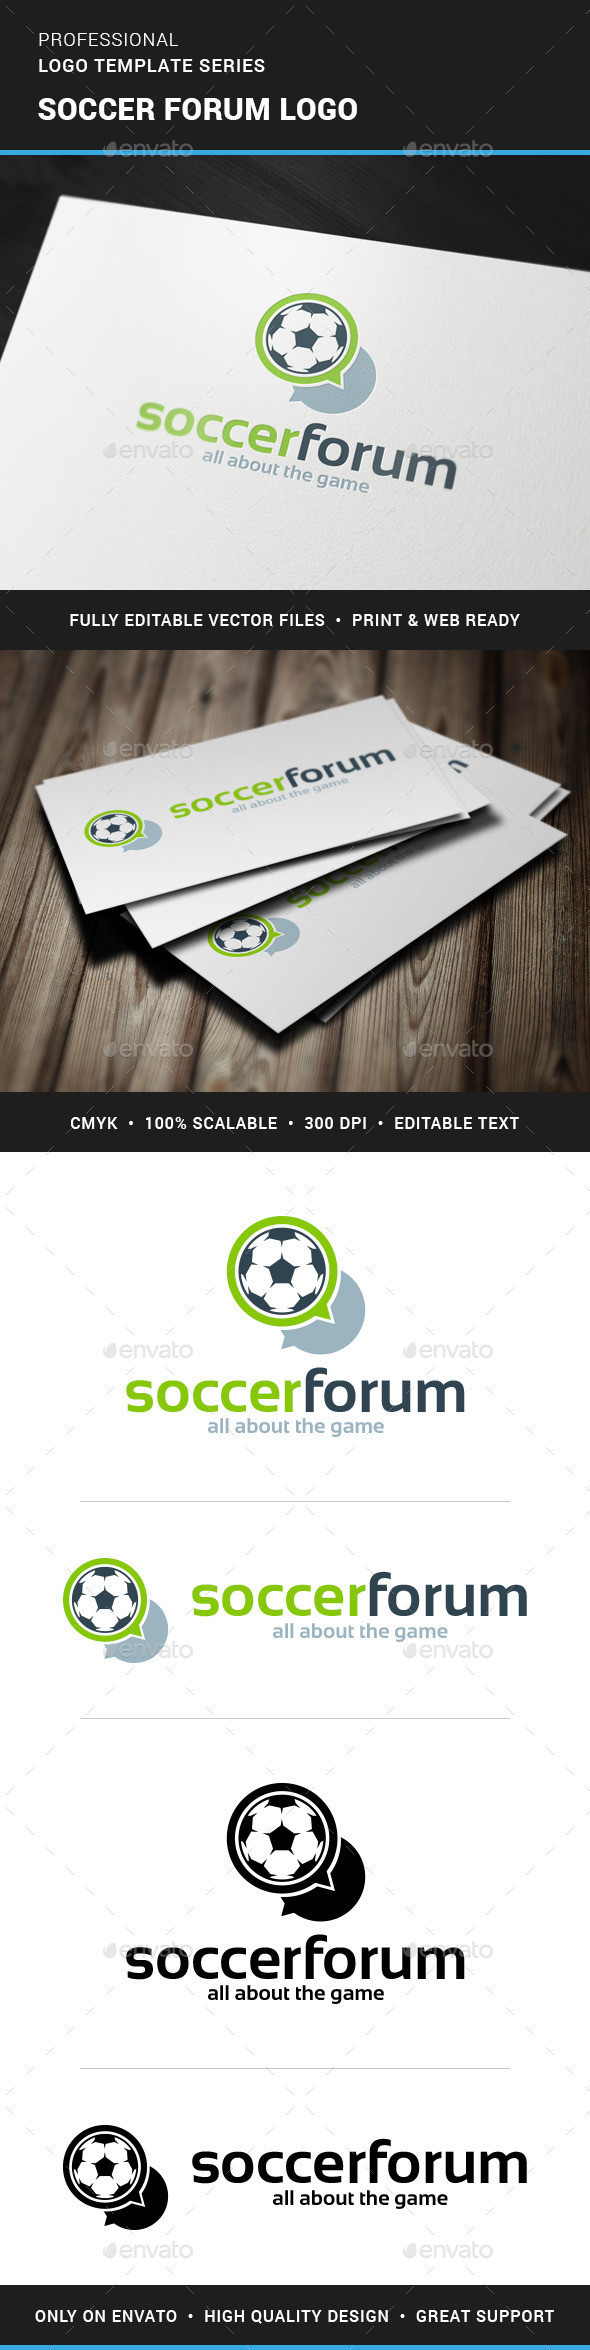 Soccer forum logo